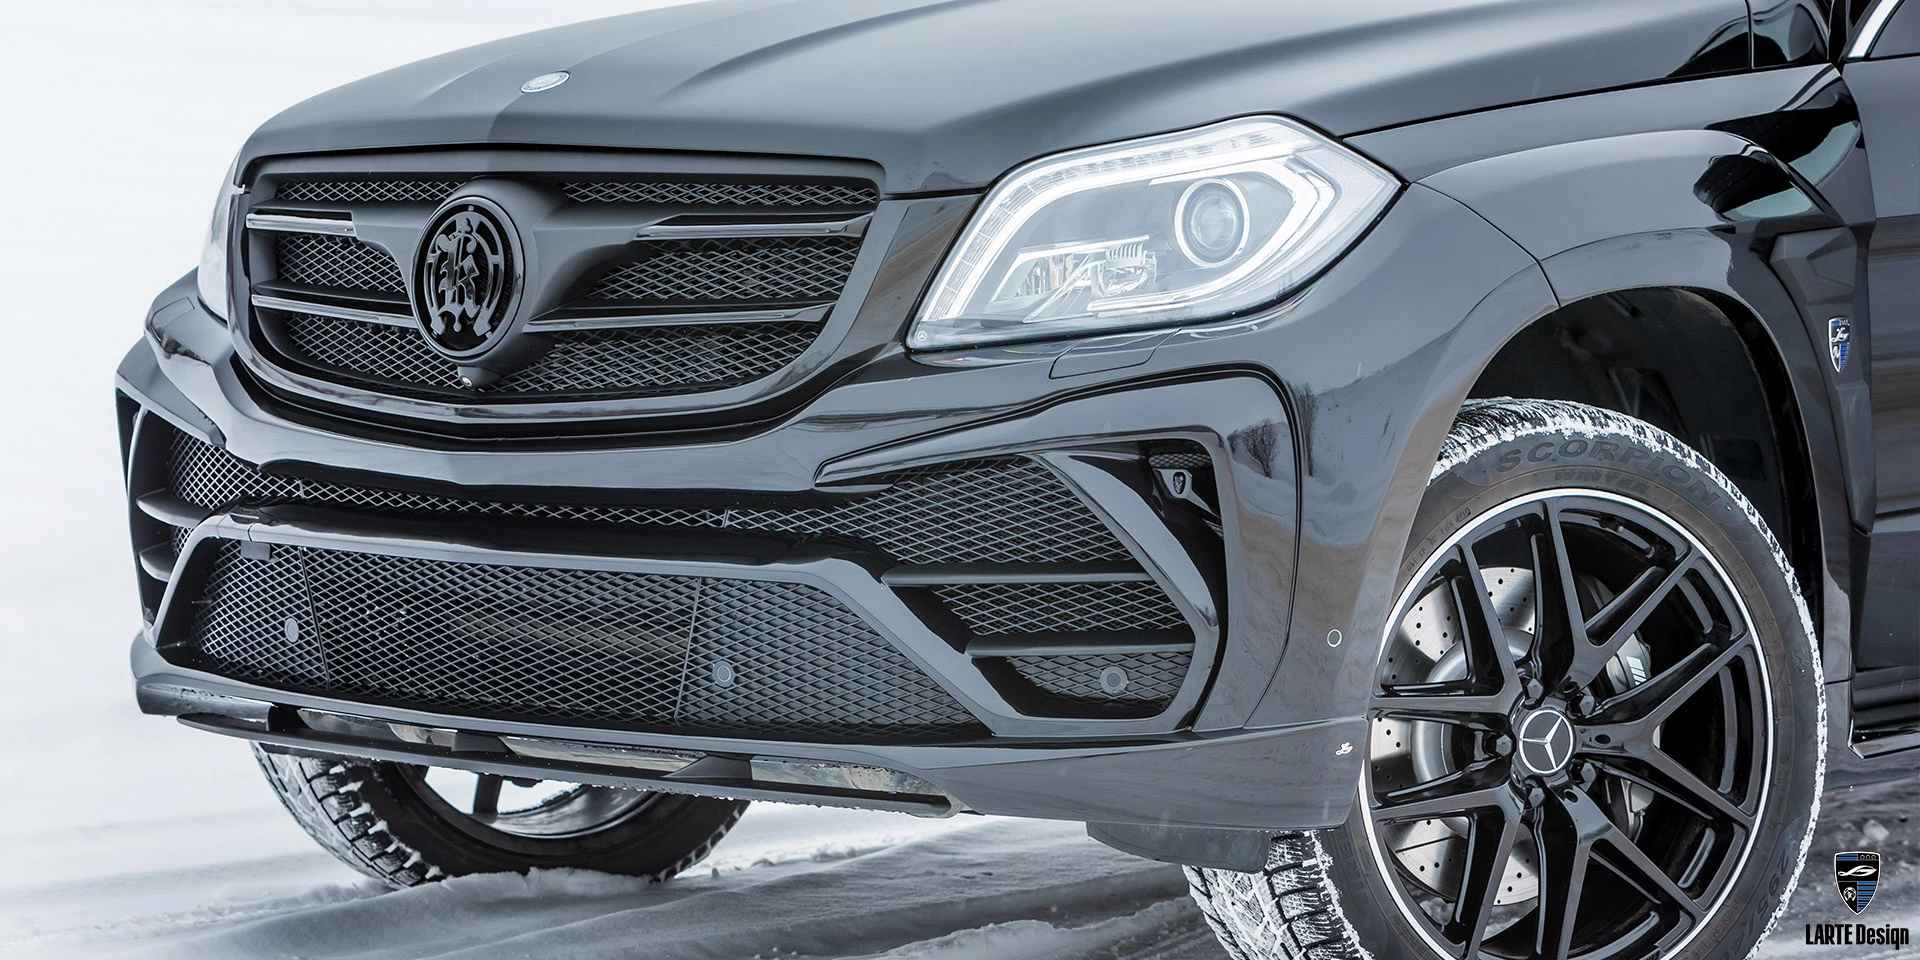 Order tuning front bumper BLACK CRYSTAL for Mercedes-Benz GLS Х166 2015-2020 